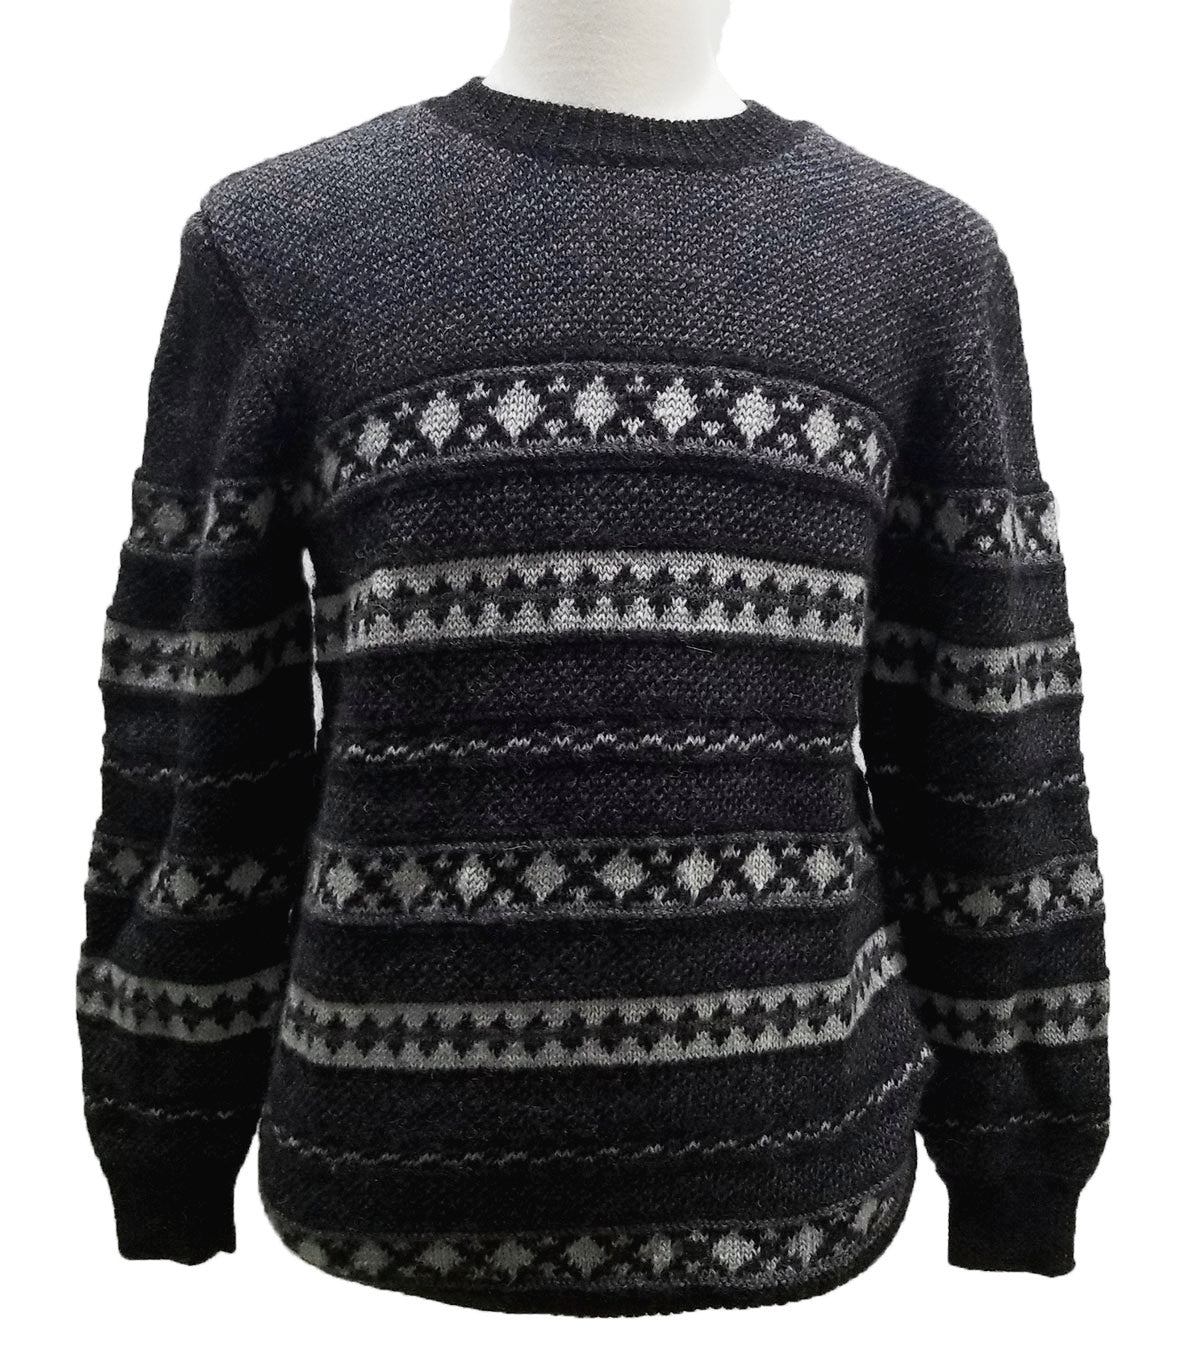 Jacquard Crew Neck Wool Sweater Made in USA | RAMBLERS WAY